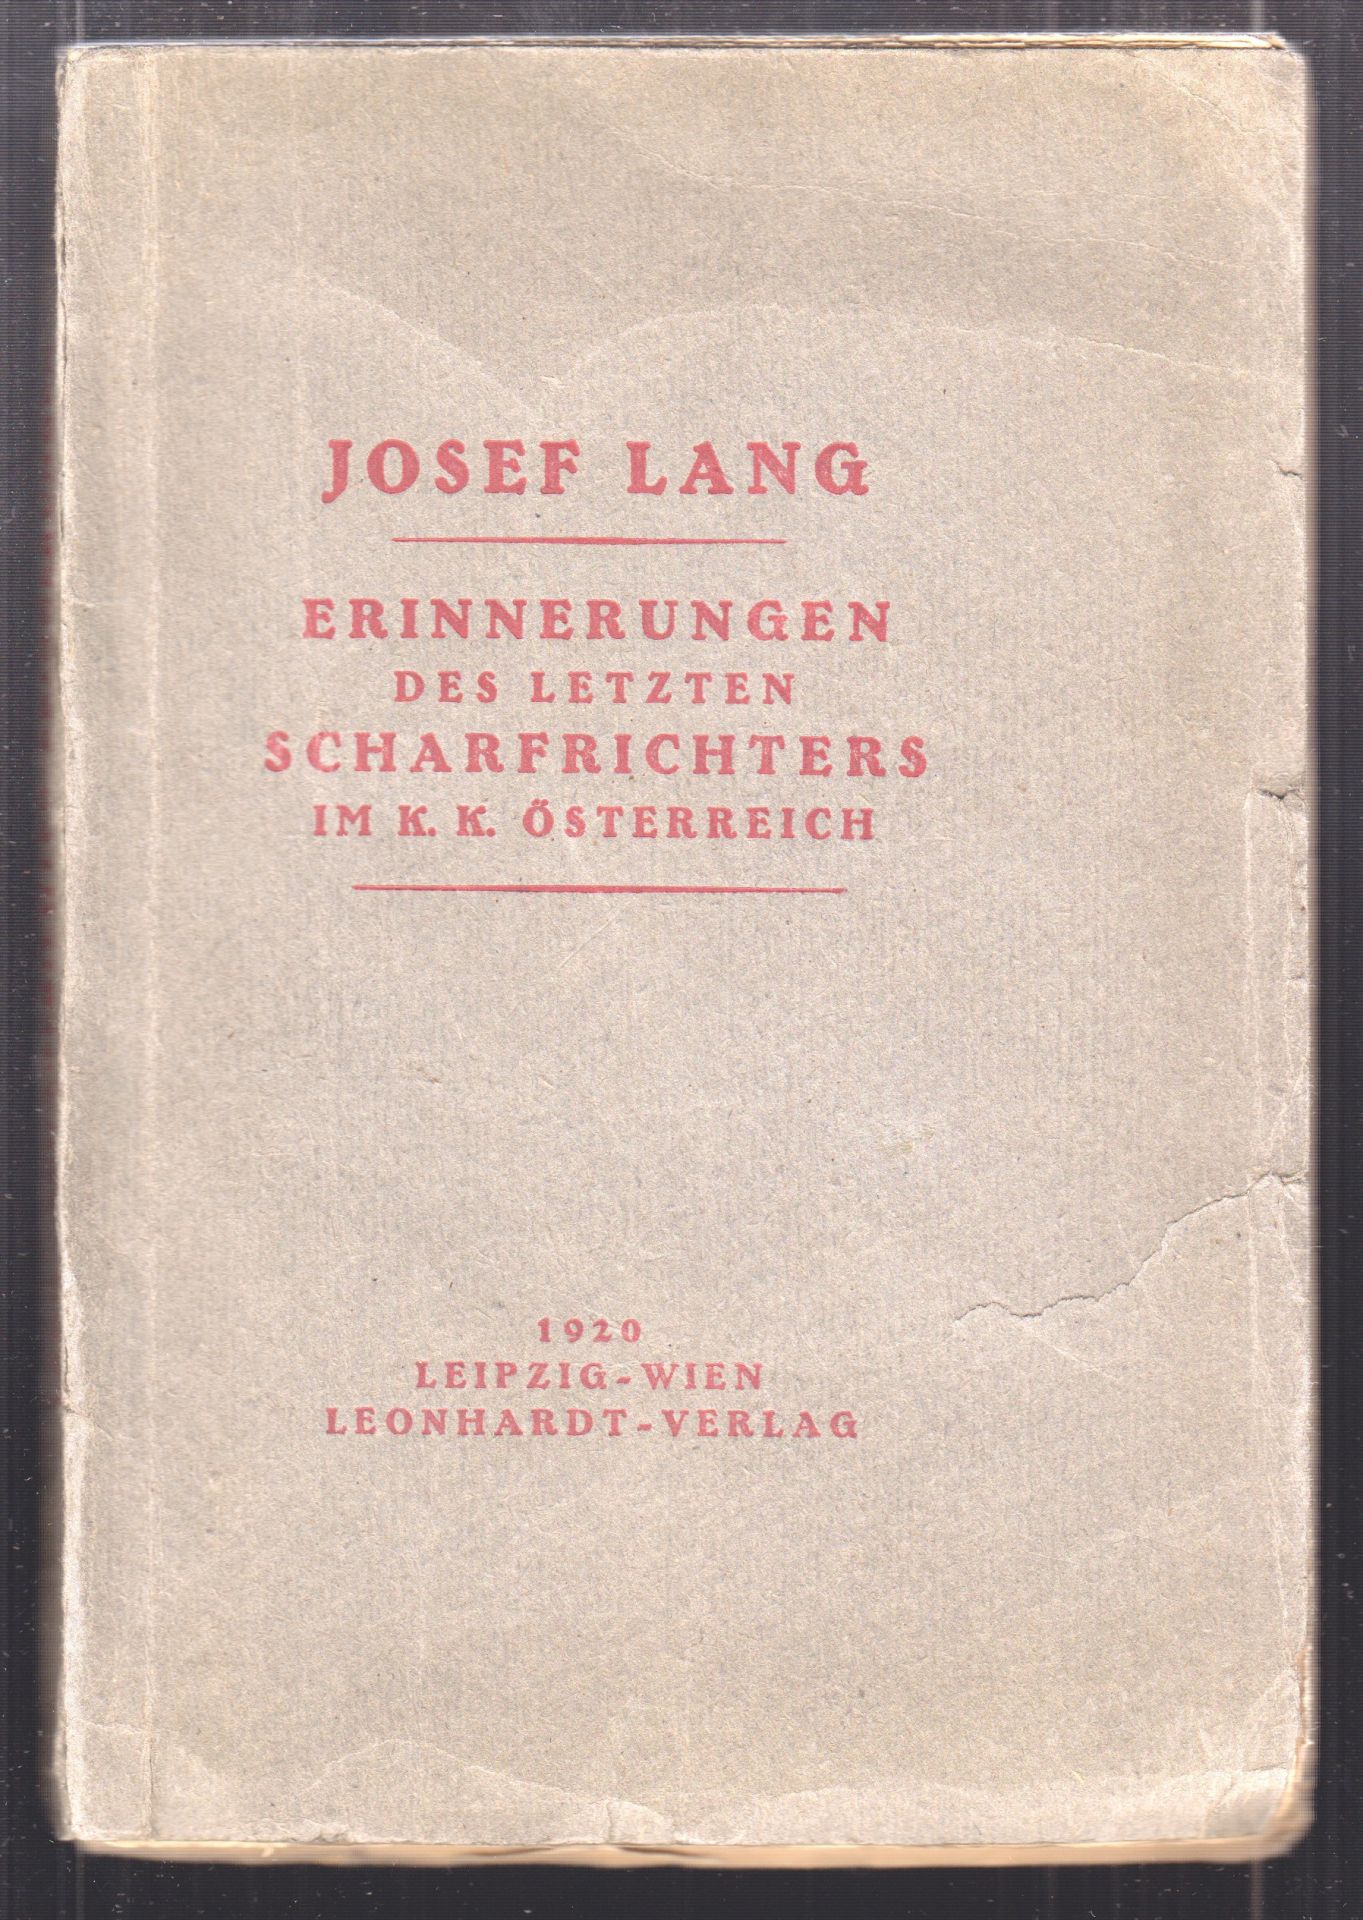 LANG, Josef. Erinnerungen des letzten Scharfrichters im k.k. sterreich. Herausgegeben von Oskar Schalk.